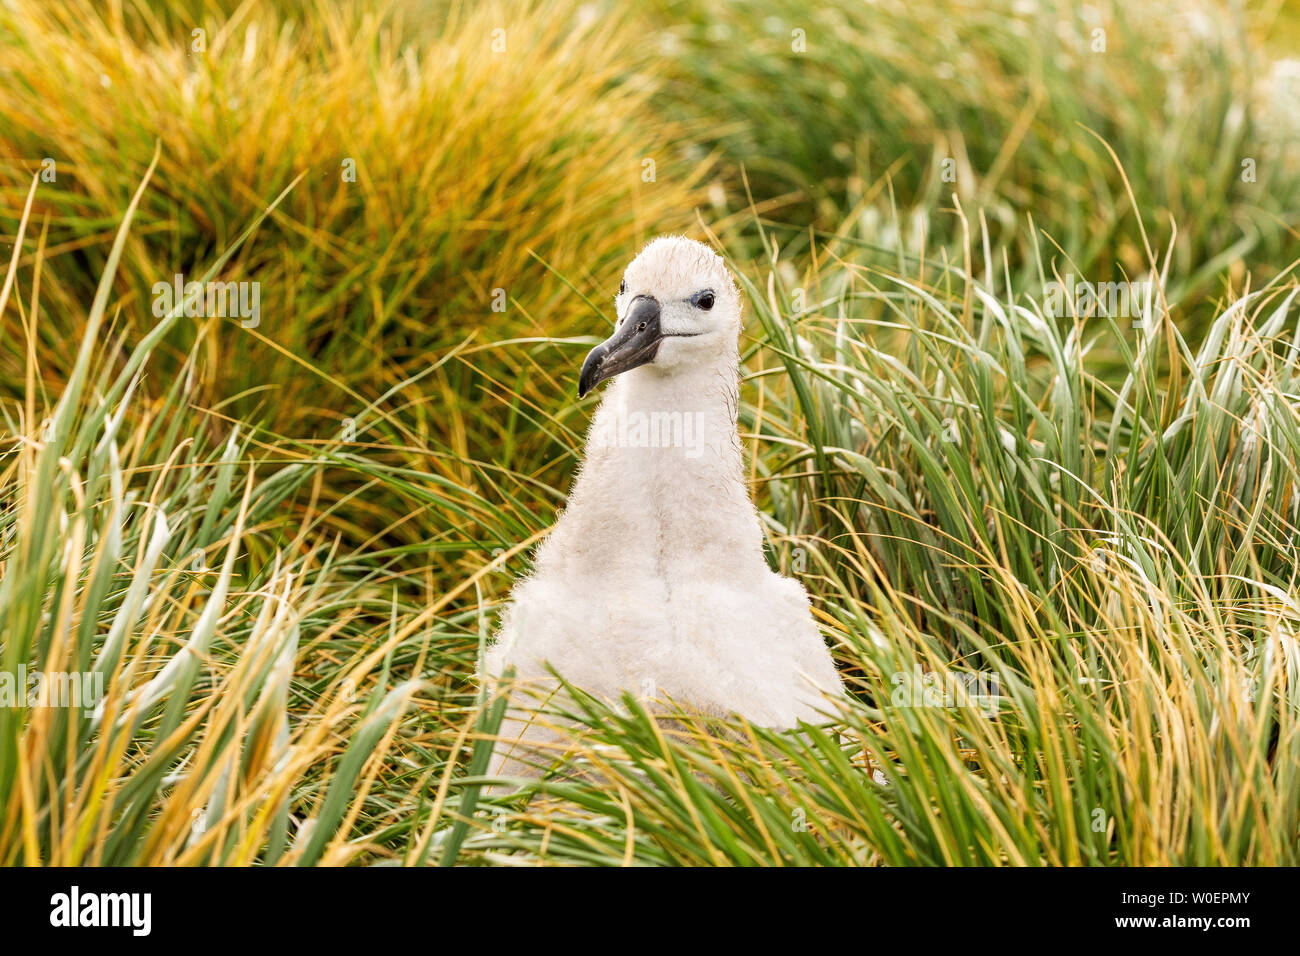 Schwarz tiefsten Albatross Kolonie auf West Point Island, Falkland Inseln. Cute s weiß Küken mit flaumiger Federn und beady schwarze Augen blickt direkt in der Kamera Stockfoto